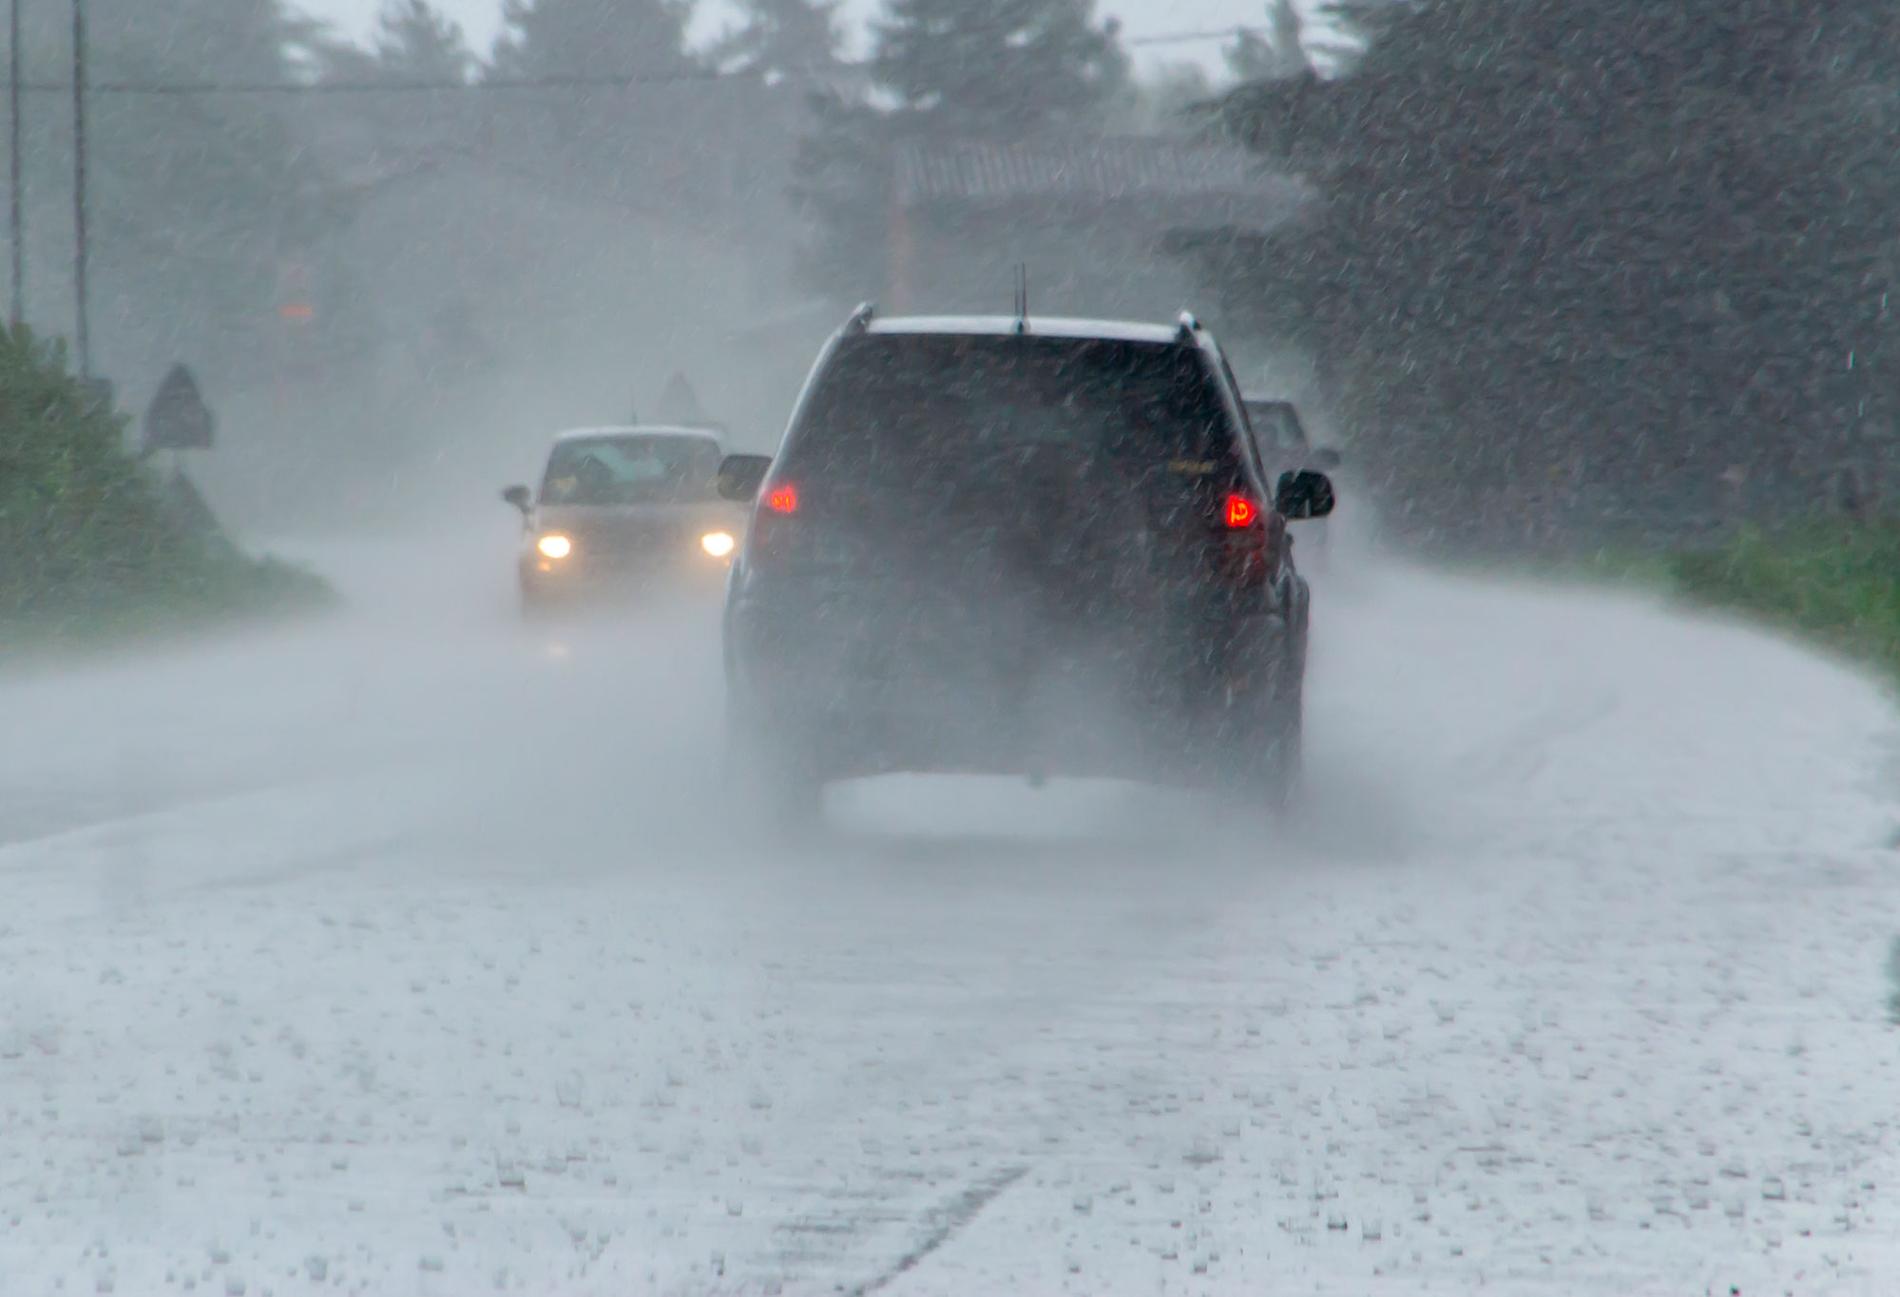 Dåligt väder kommer på förstaplats av saker som gör folk irriterade när de åker bil, enligt en undersökning som Aftonbladet gjort.